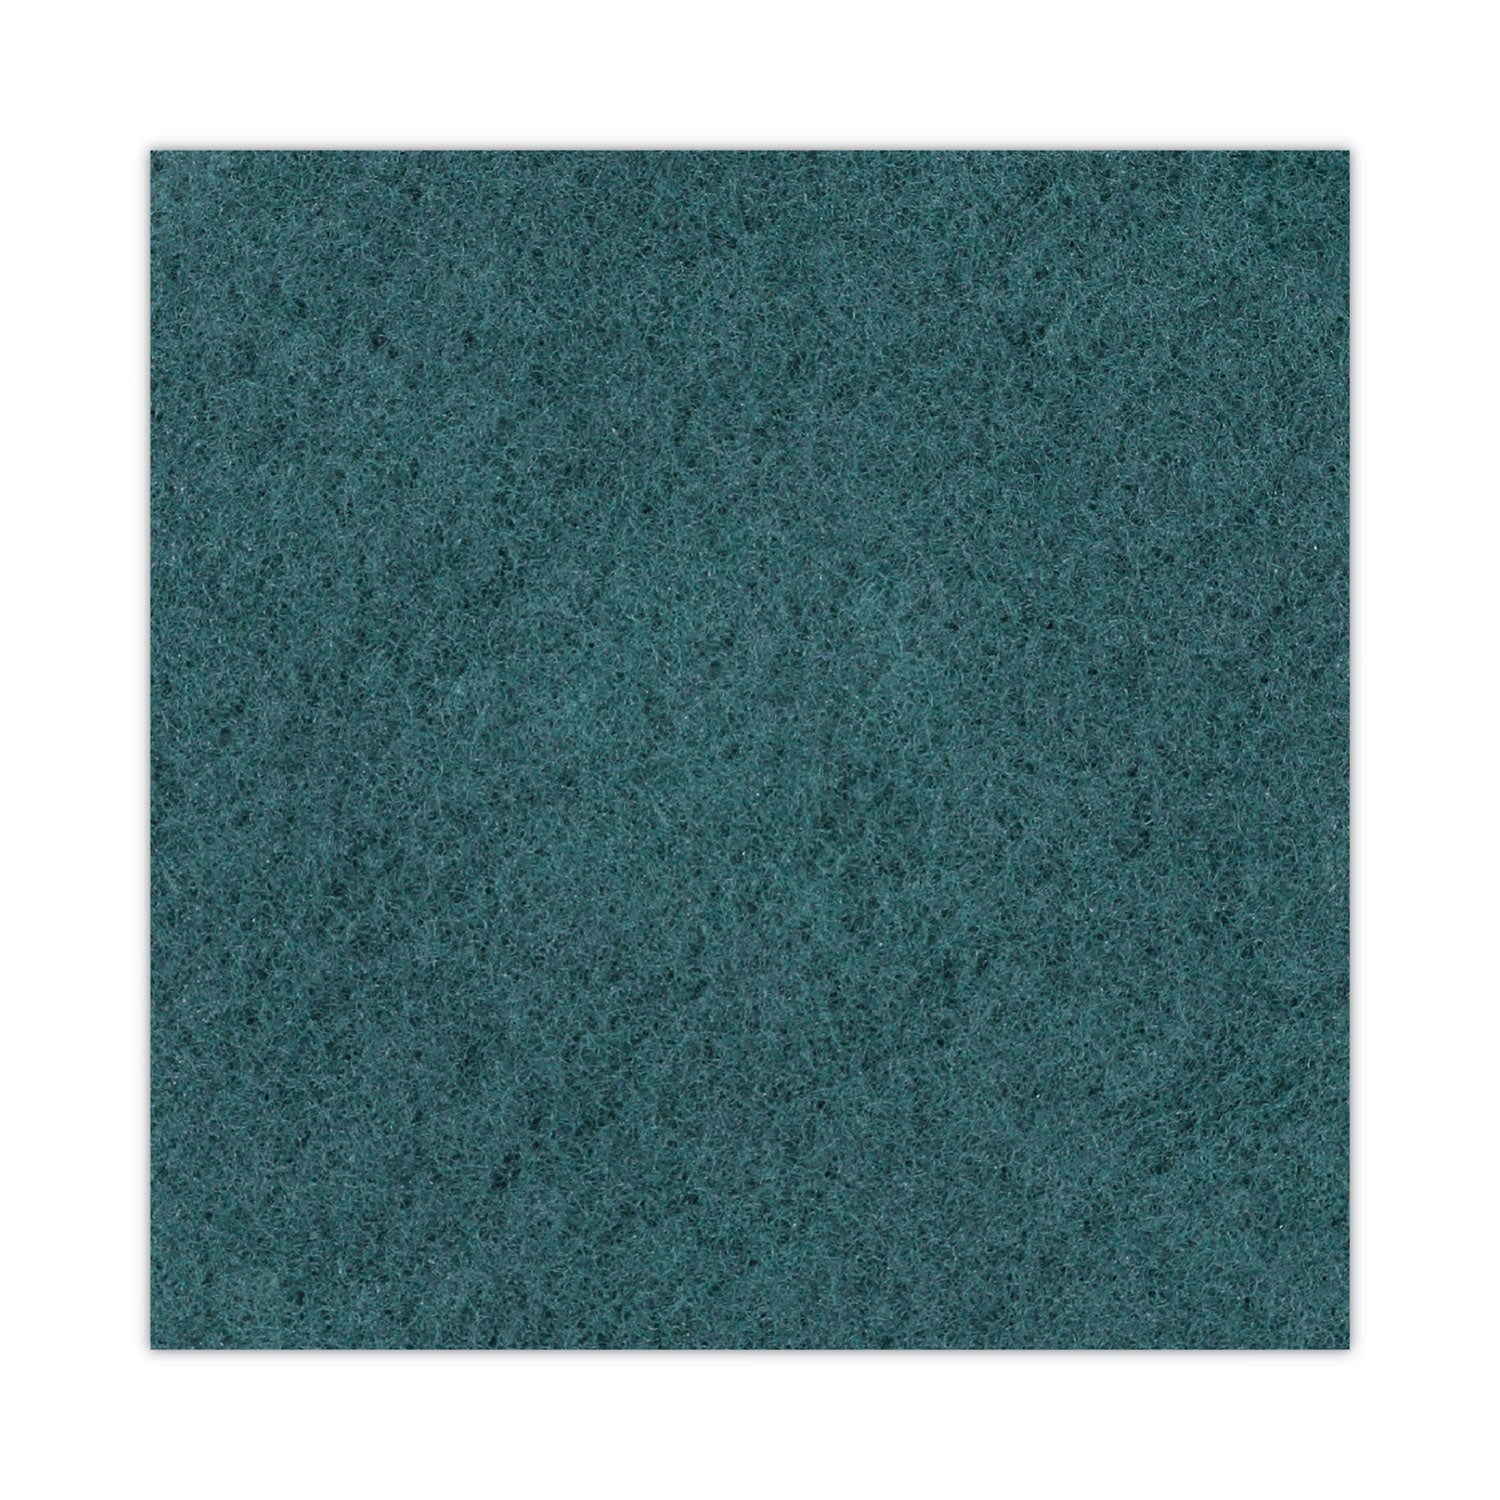 heavy-duty-scrubbing-floor-pads-16-diameter-green-5-carton_bwk4016gre - 6